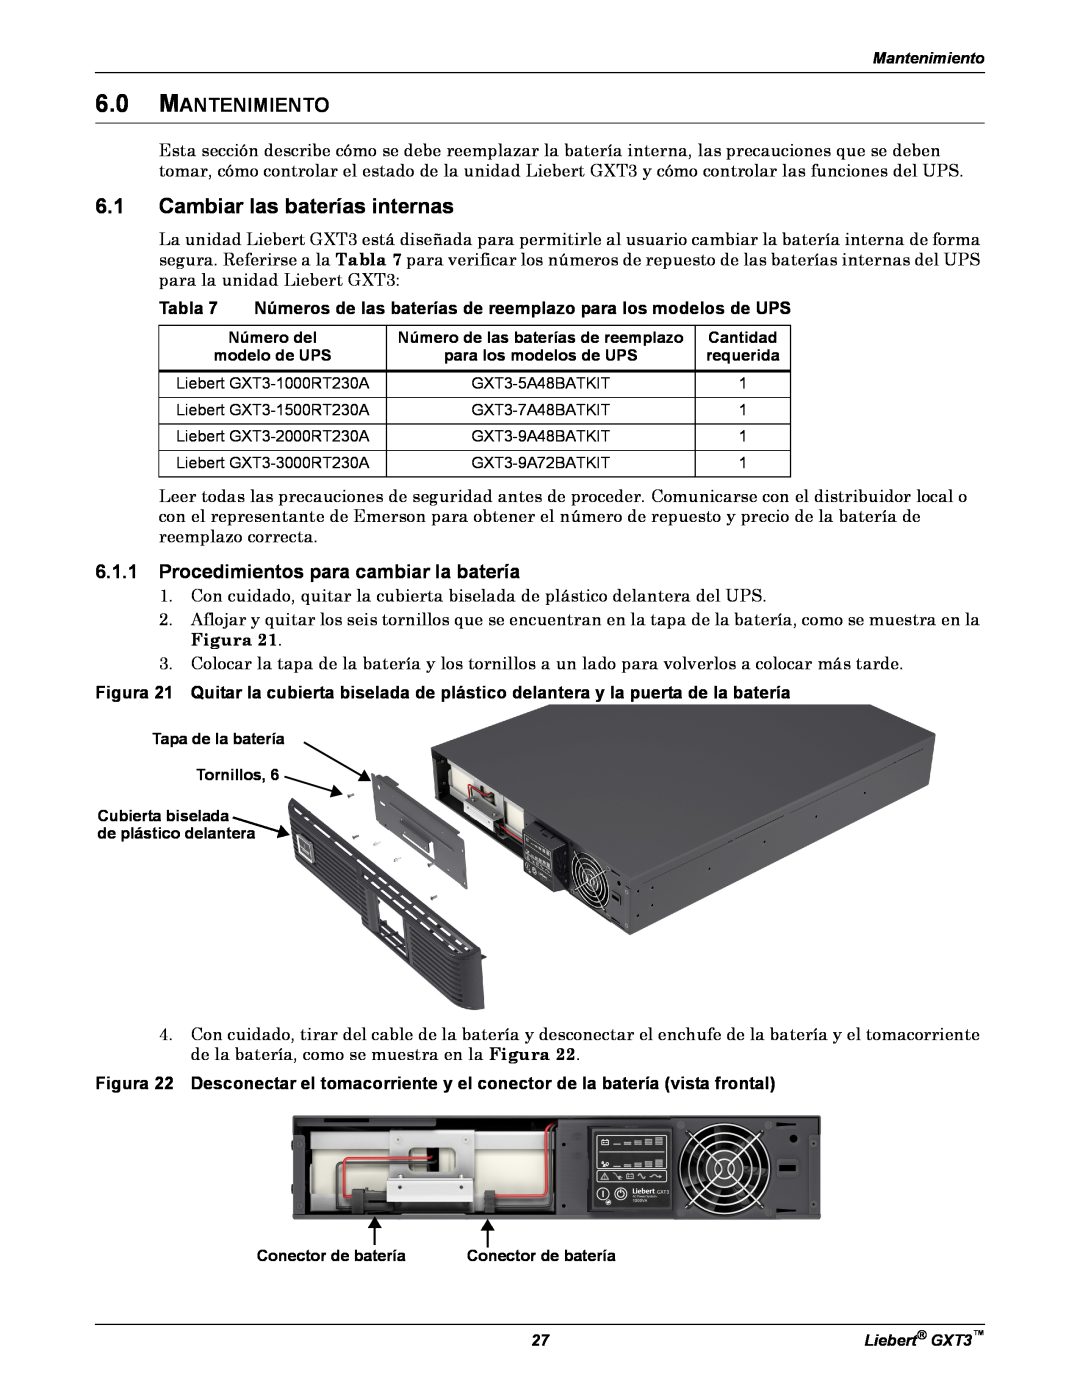 Emerson GXT3 manual Cambiar las baterías internas, Mantenimiento, Procedimientos para cambiar la batería, Tabla 